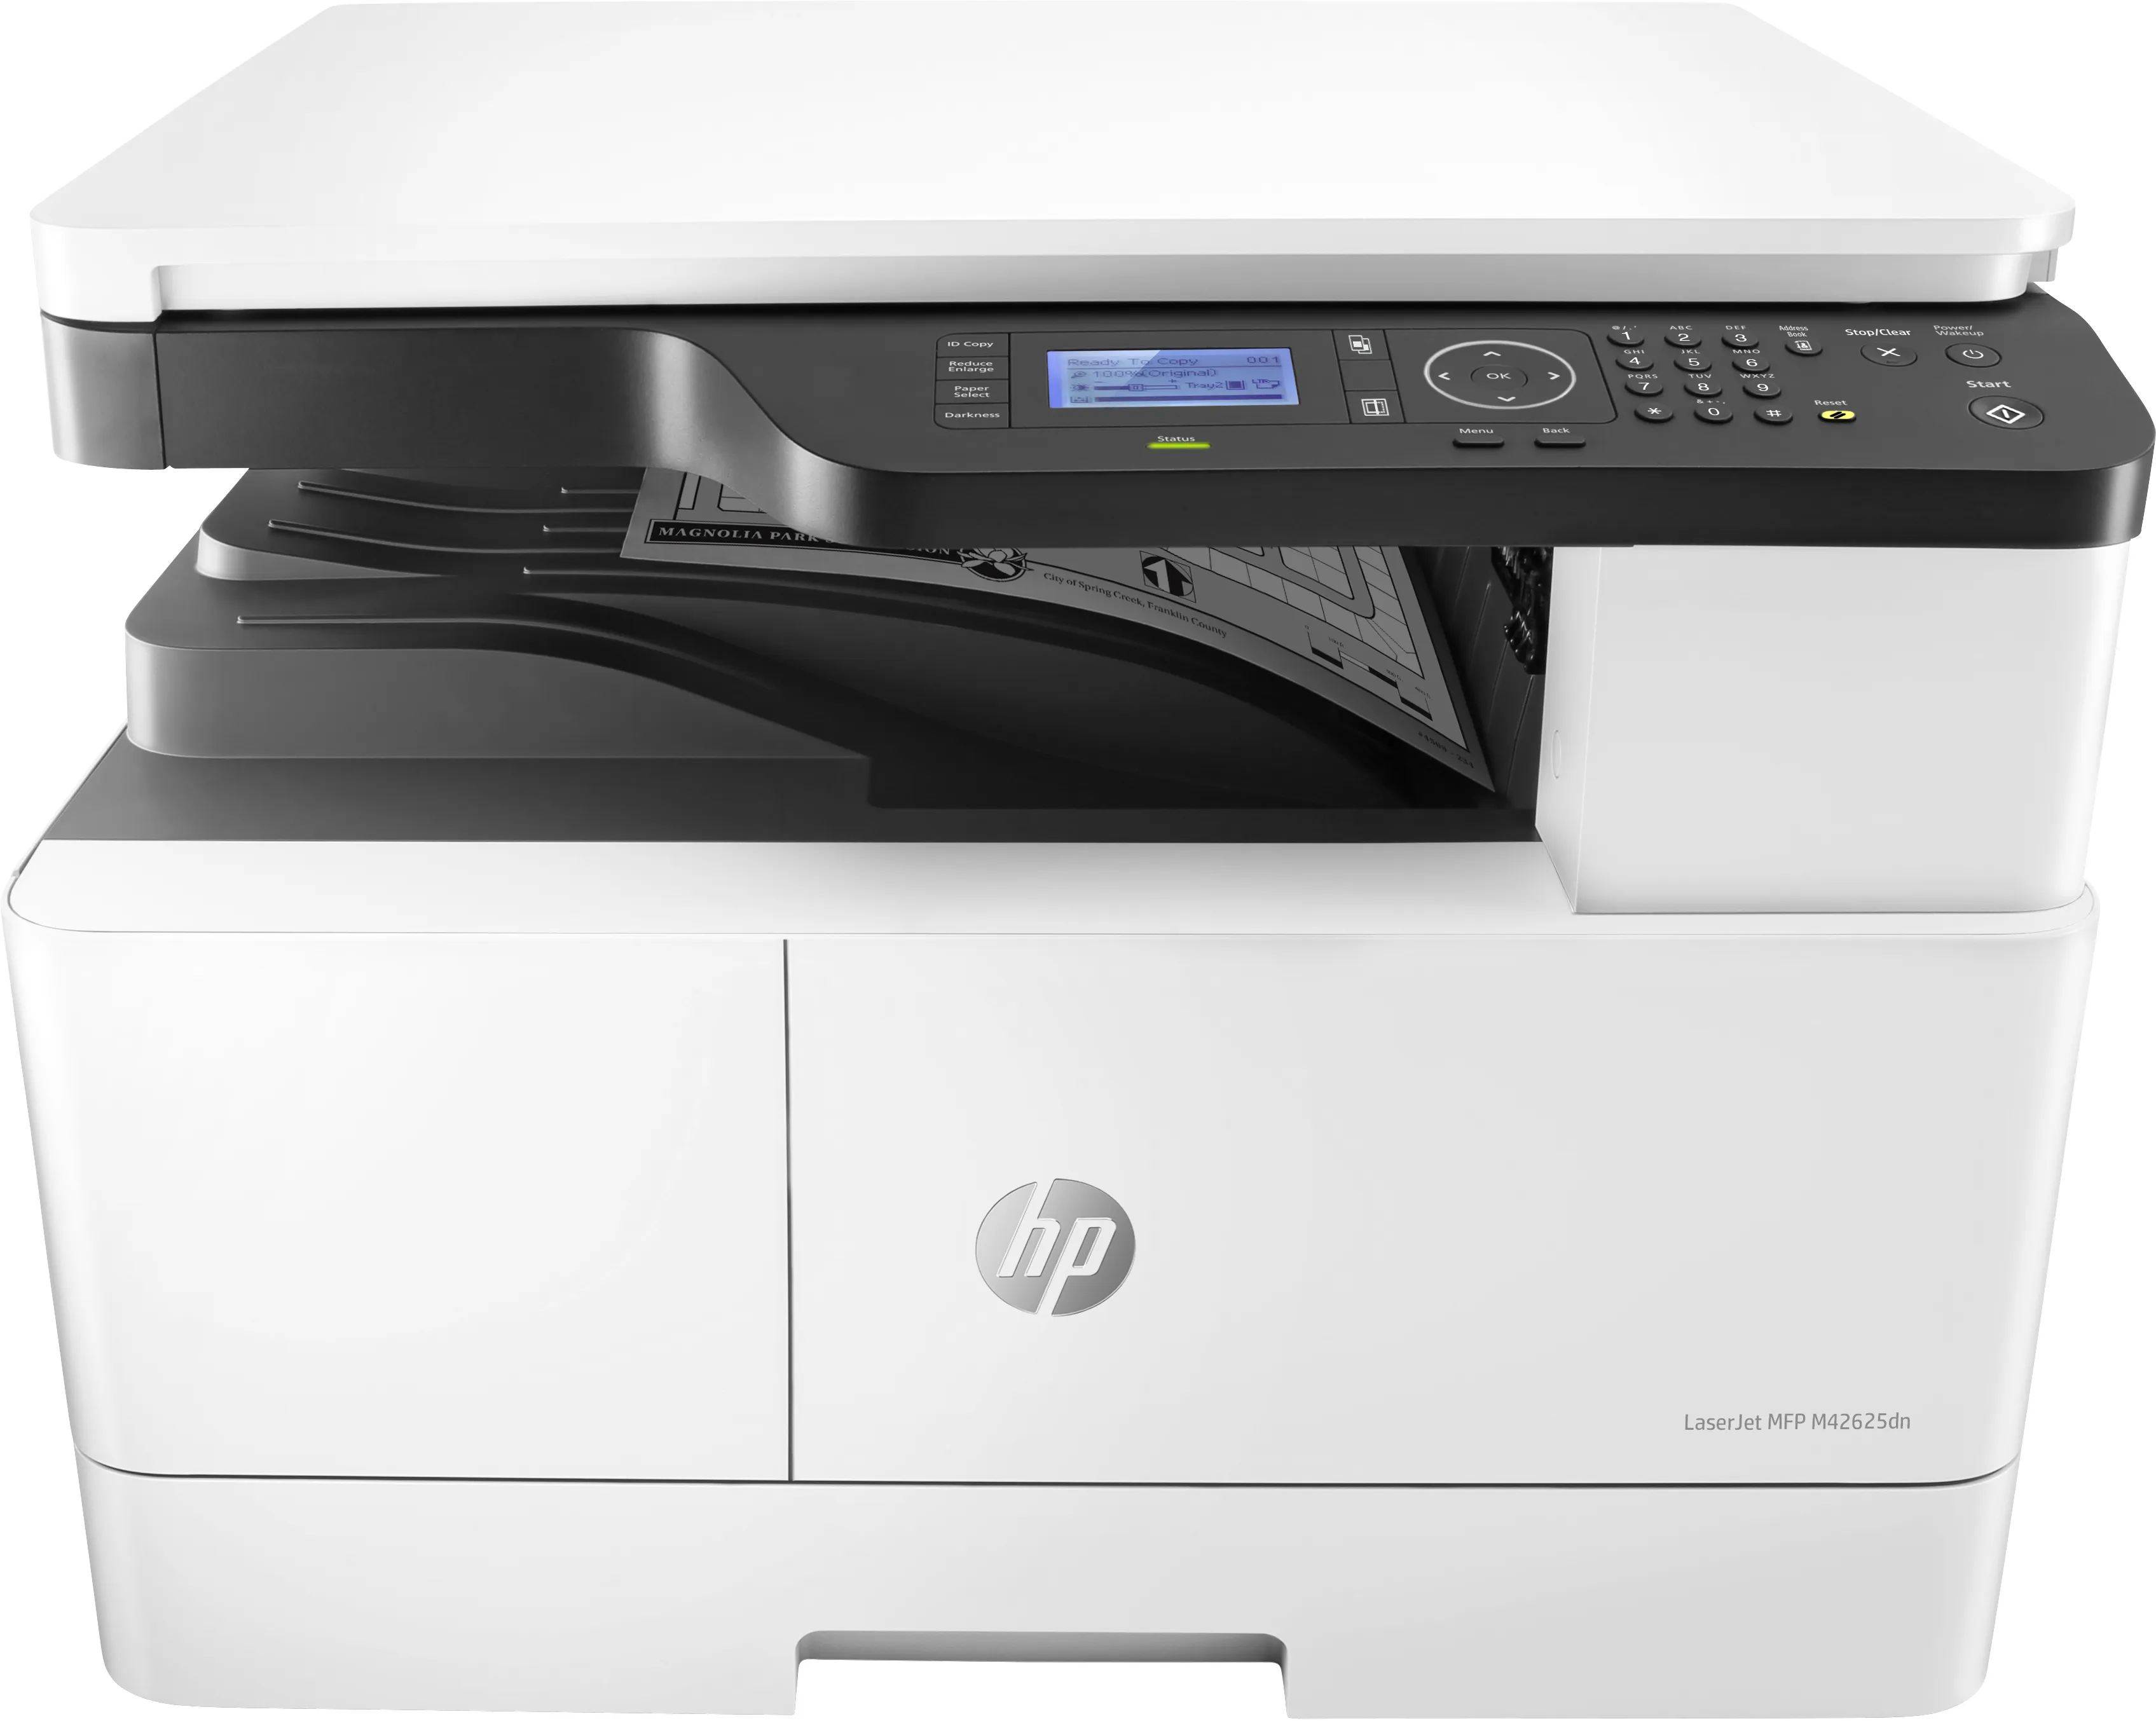 Vente Imprimante multifonction HP LaserJet M42625dn, Noir et blanc HP au meilleur prix - visuel 2